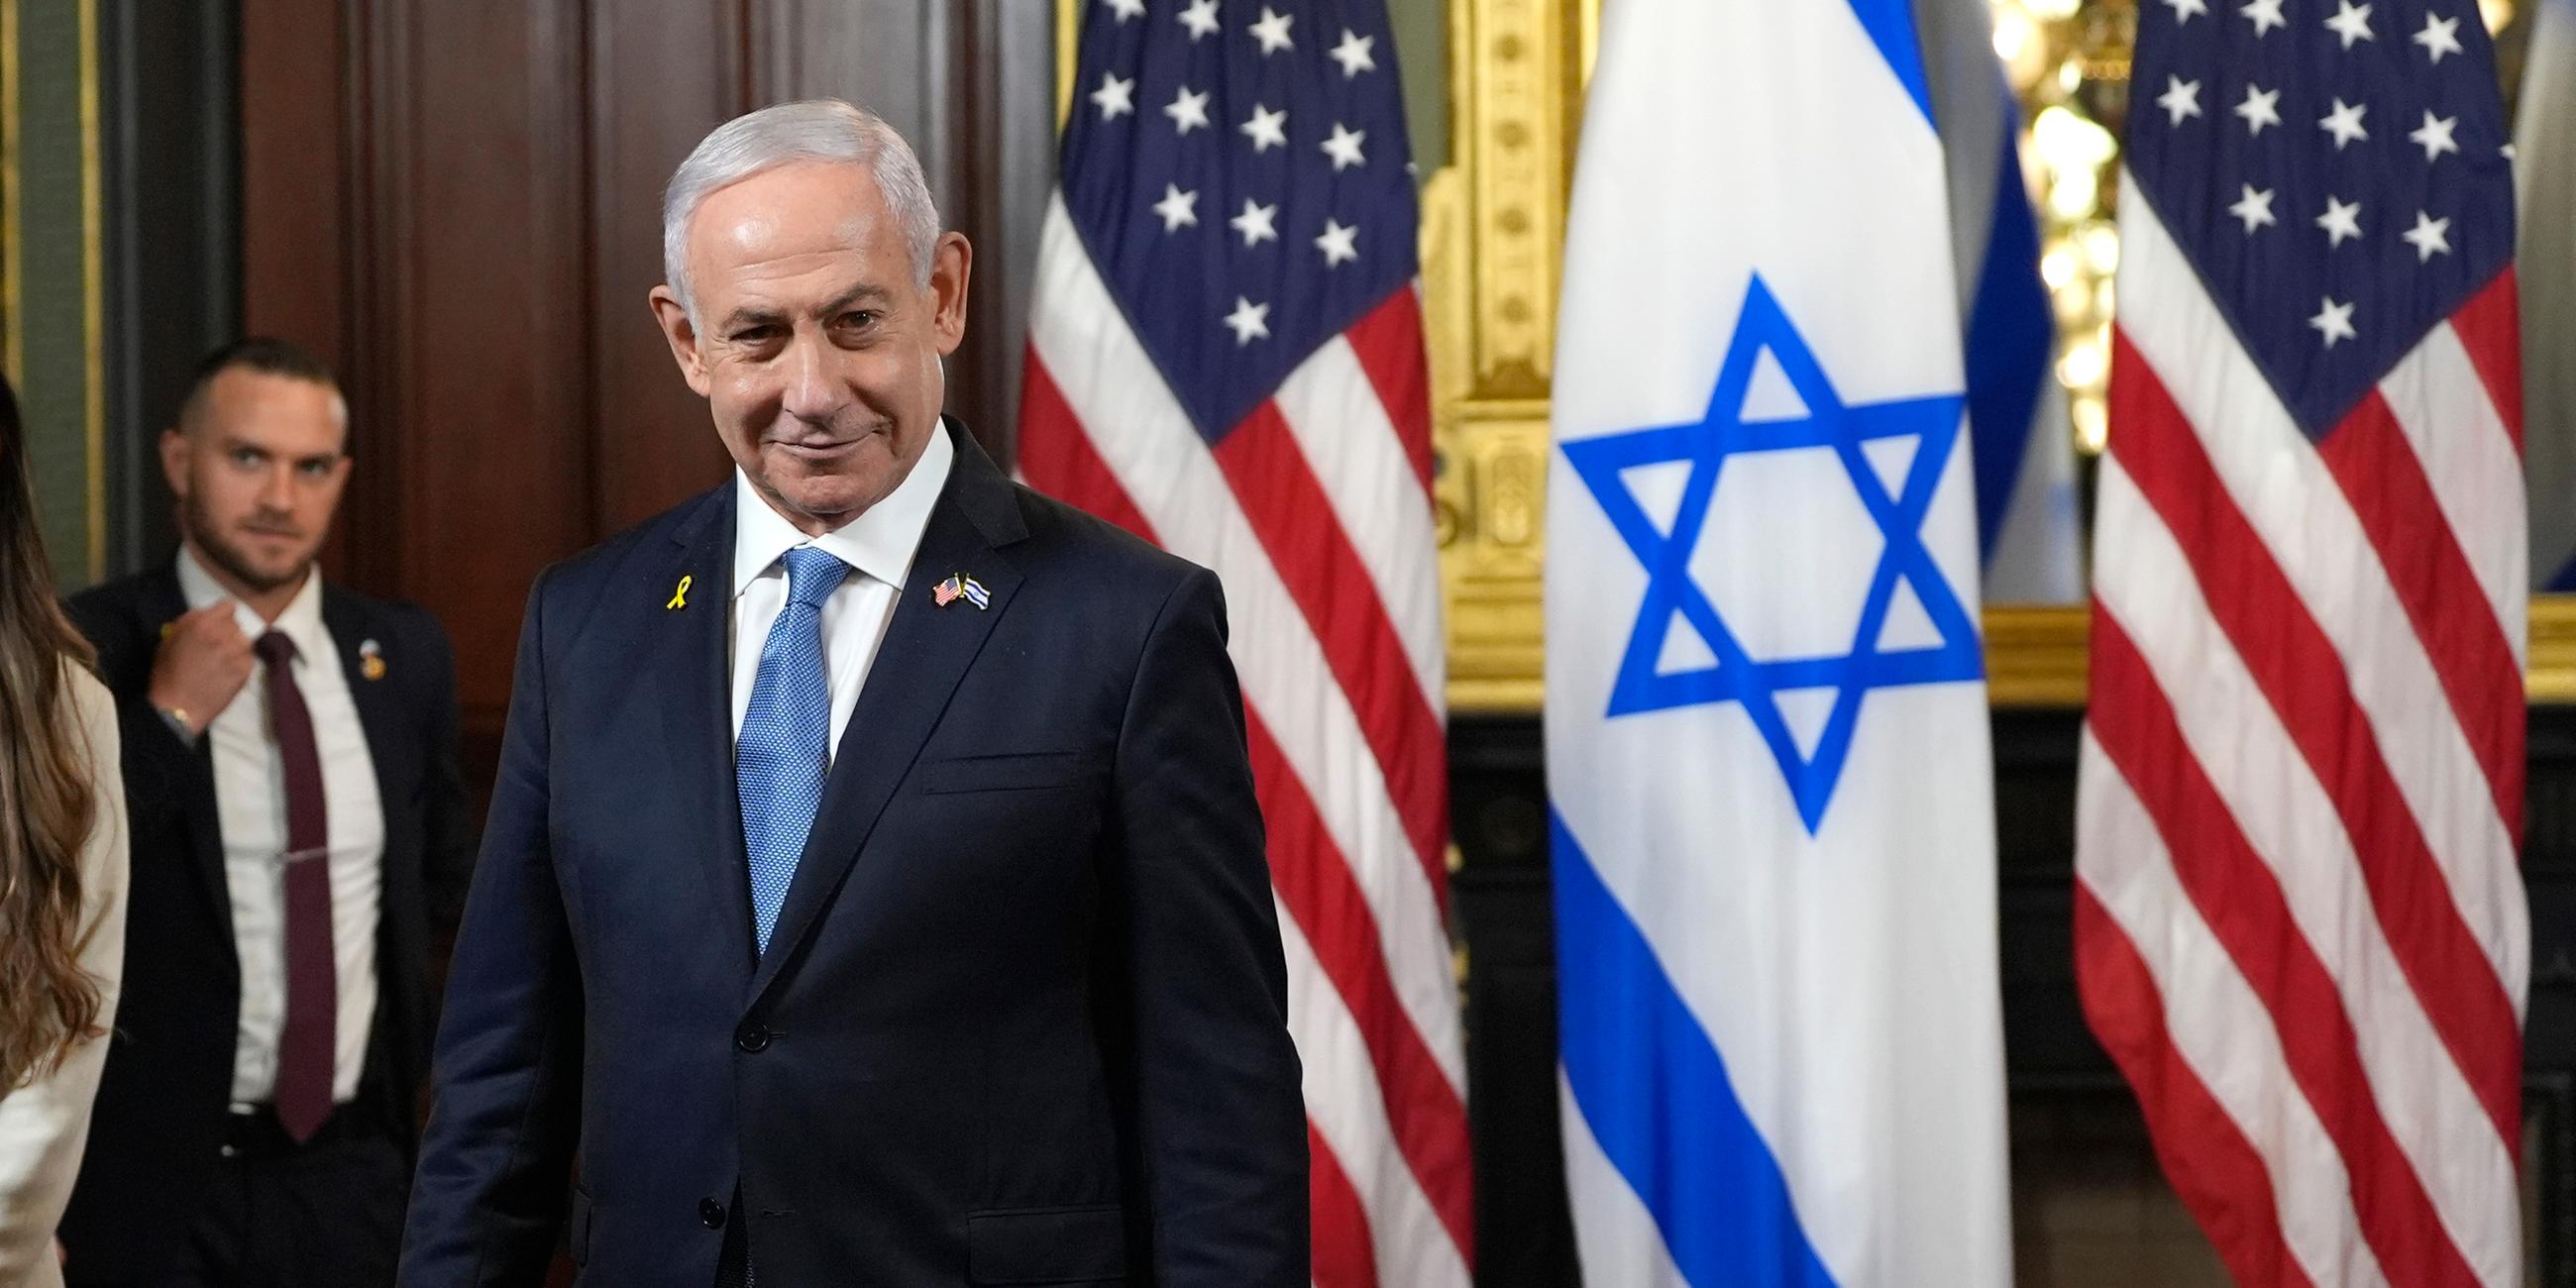 Der israelische Ministerpräsident Benjamin Netanjahu steht vor der israelischen und amerikanischen Flaggen  im Eisenhower Executive Office Building im Weißen Haus.